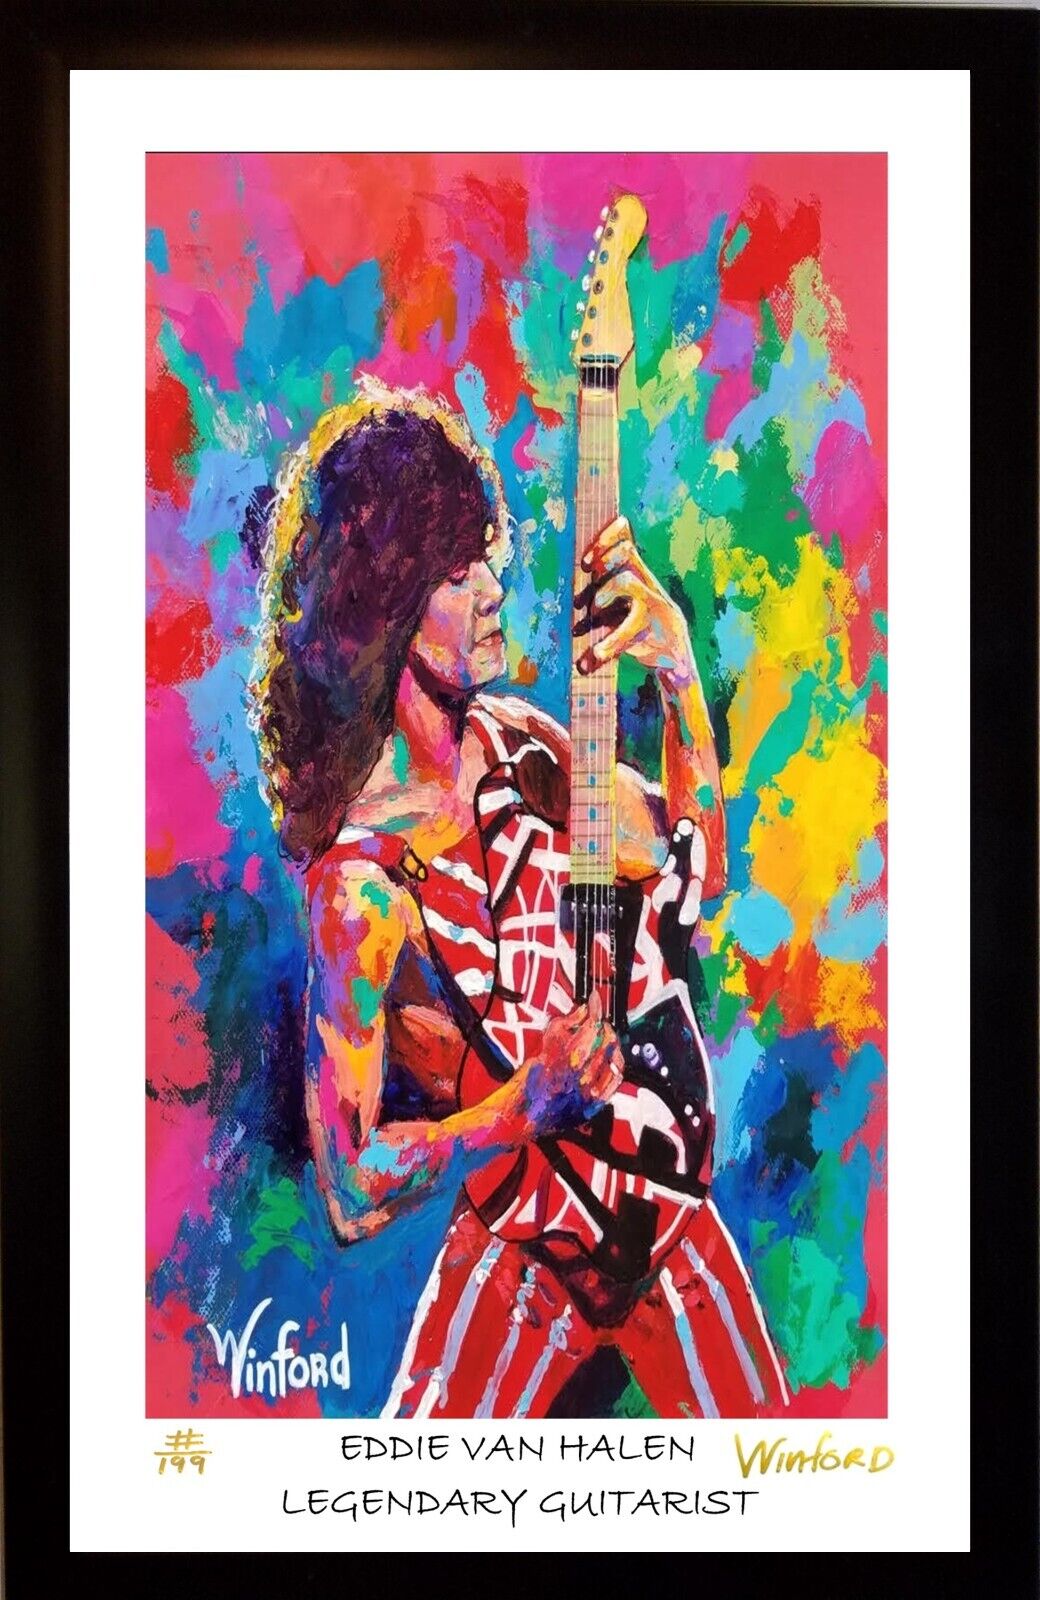 Sale Eddie Van Halen  L.E Premium Art Print By Winford Was 99.95 Now 49.95